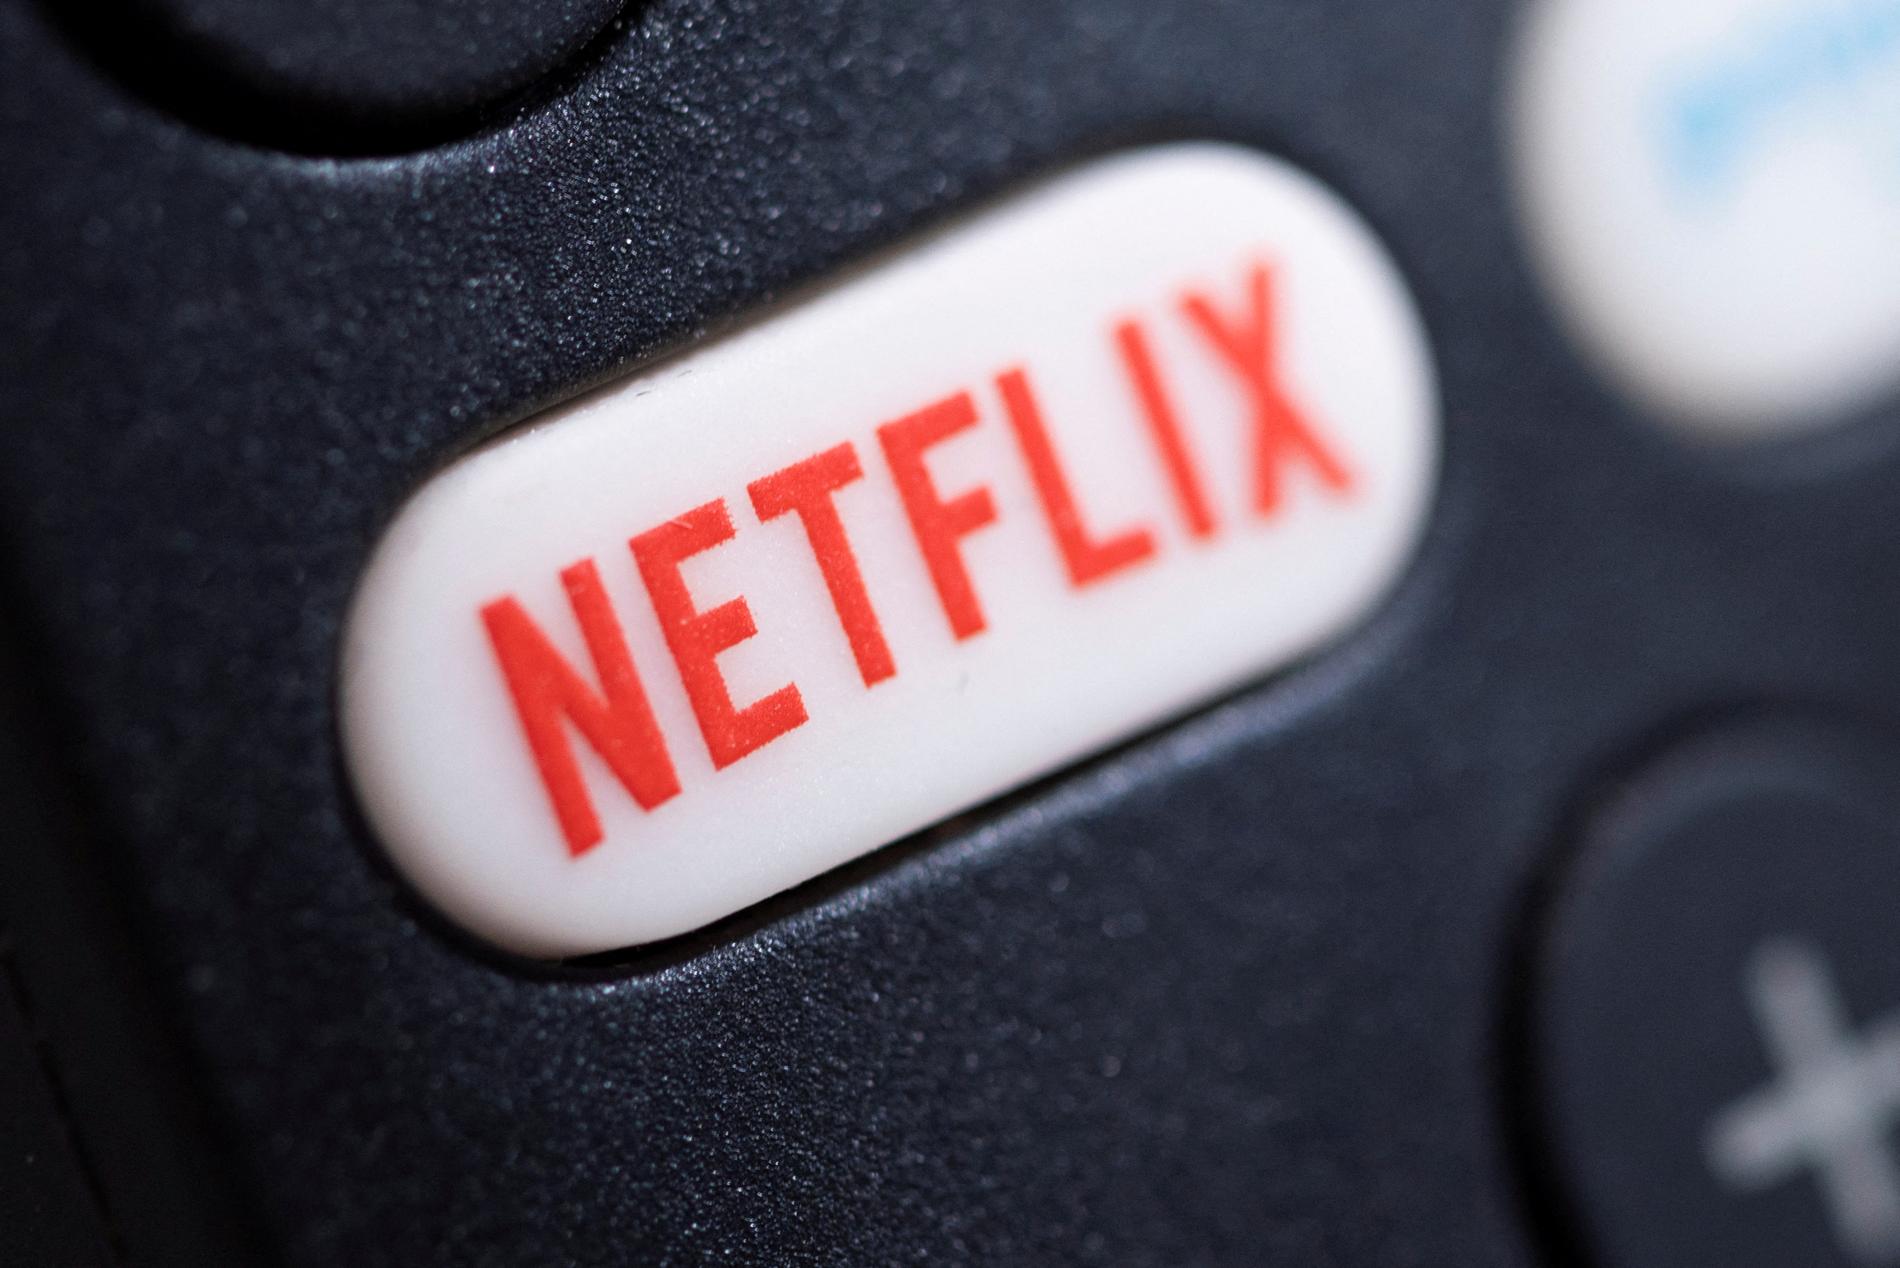 Netflix vil introdusere reklameavbrudd i sine serier og filmer slik som vi kjenner det fra lineær-TV.